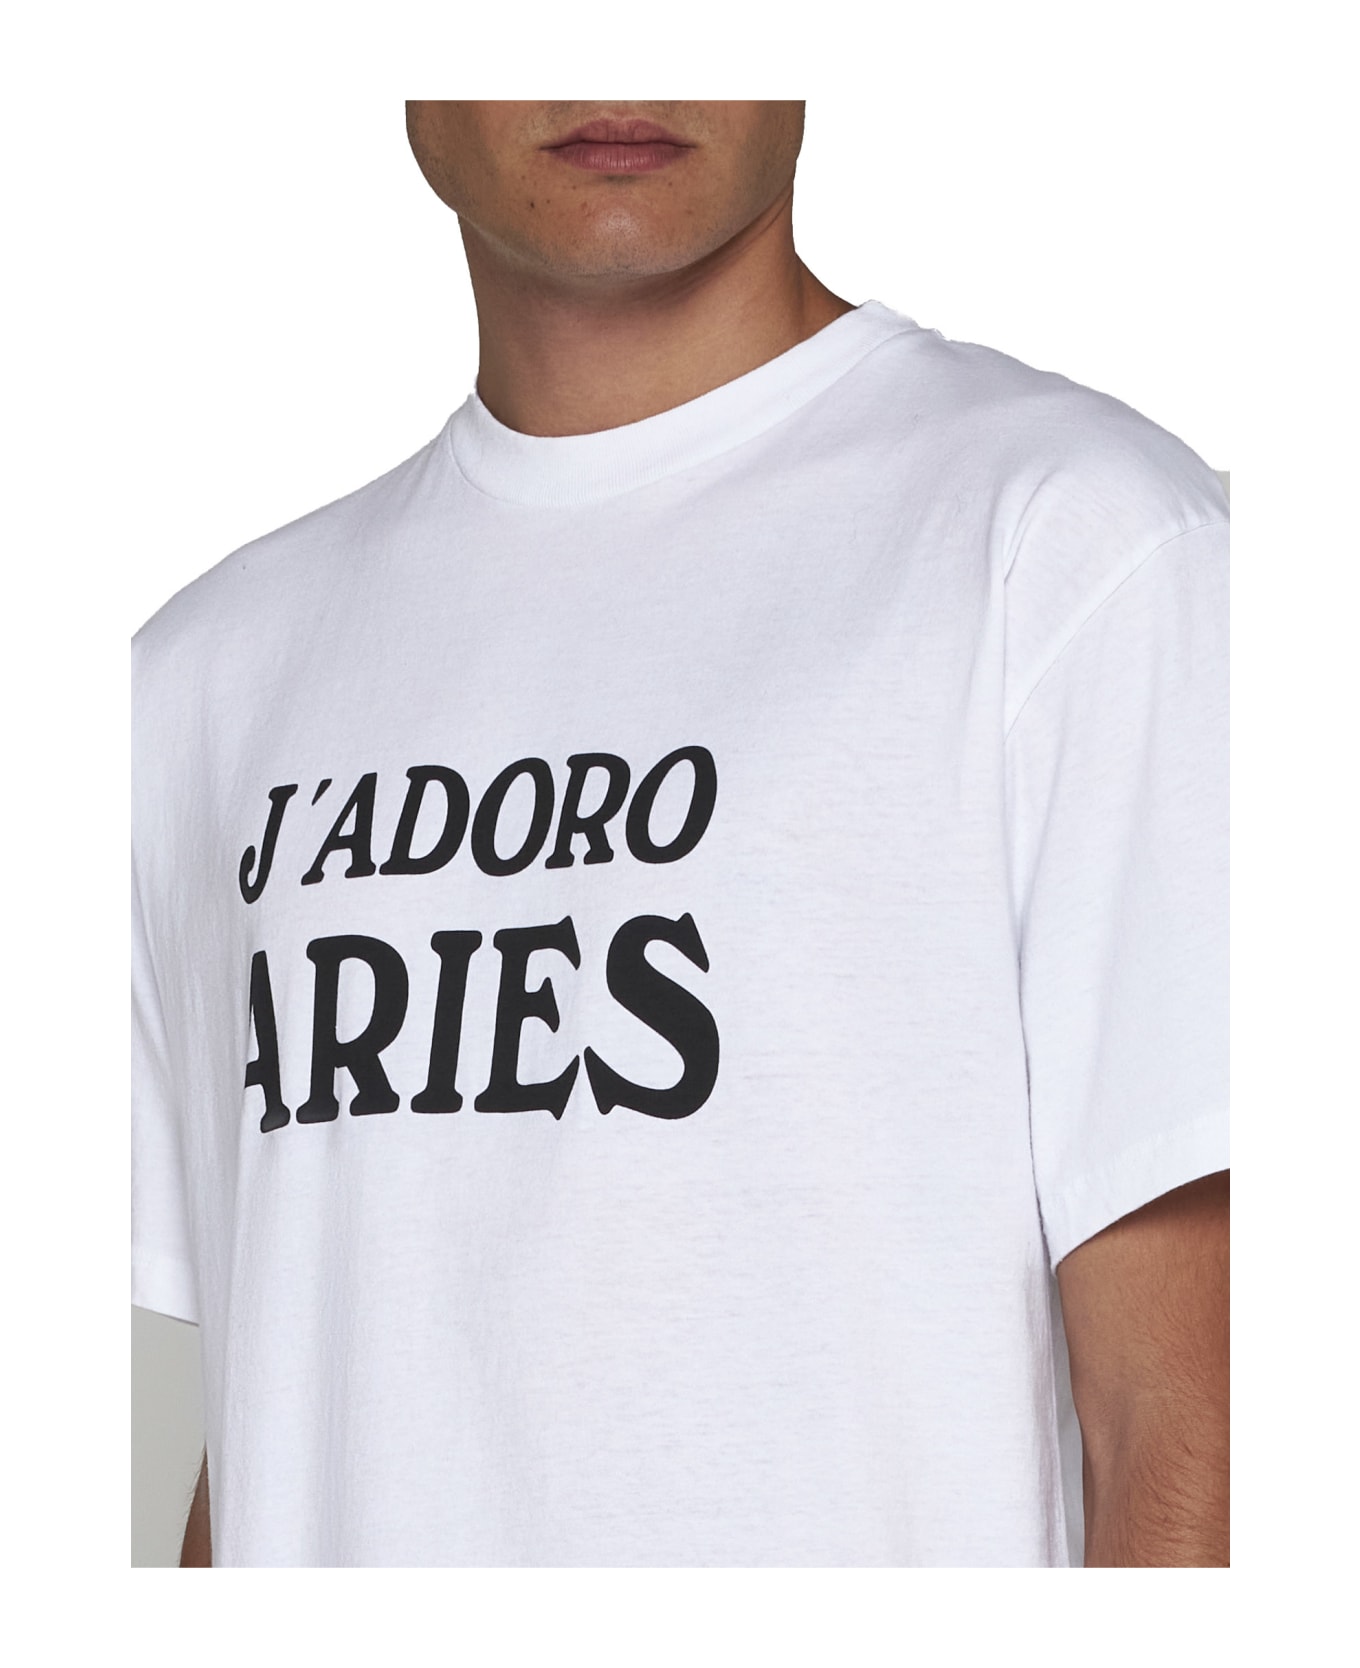 Aries T-Shirt - White